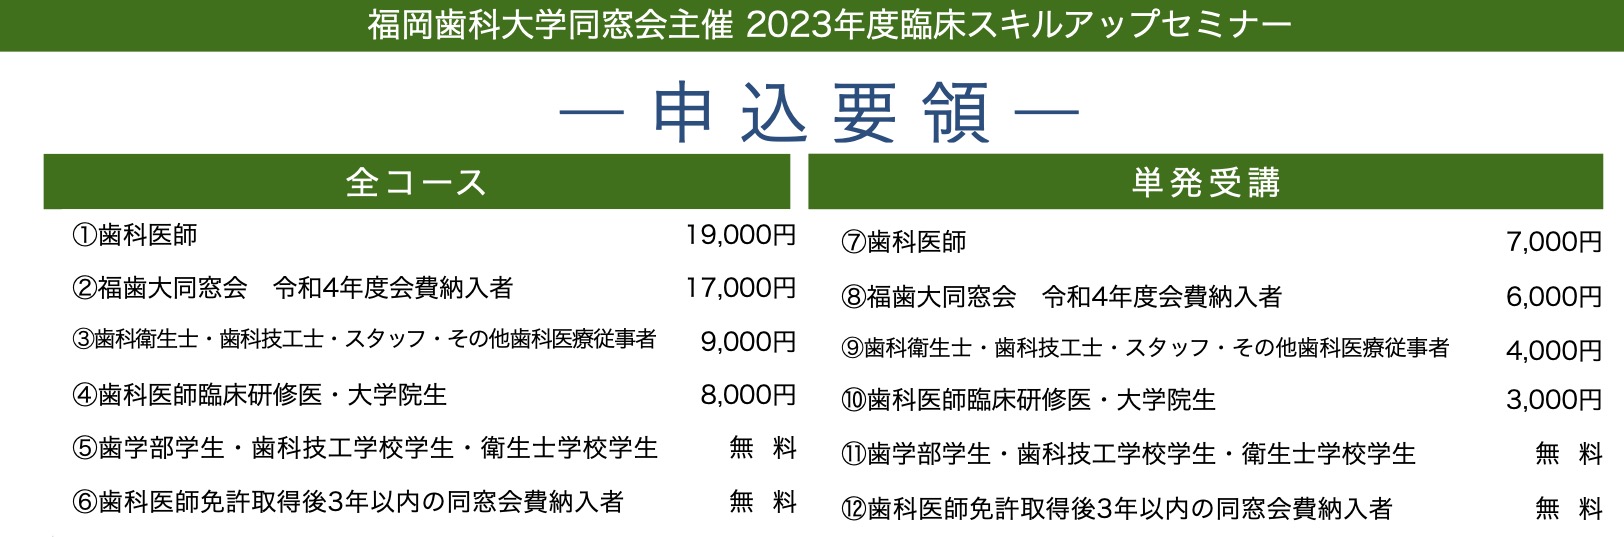 2023年度臨床スキルアップセミナー | 福岡歯科大学同窓会